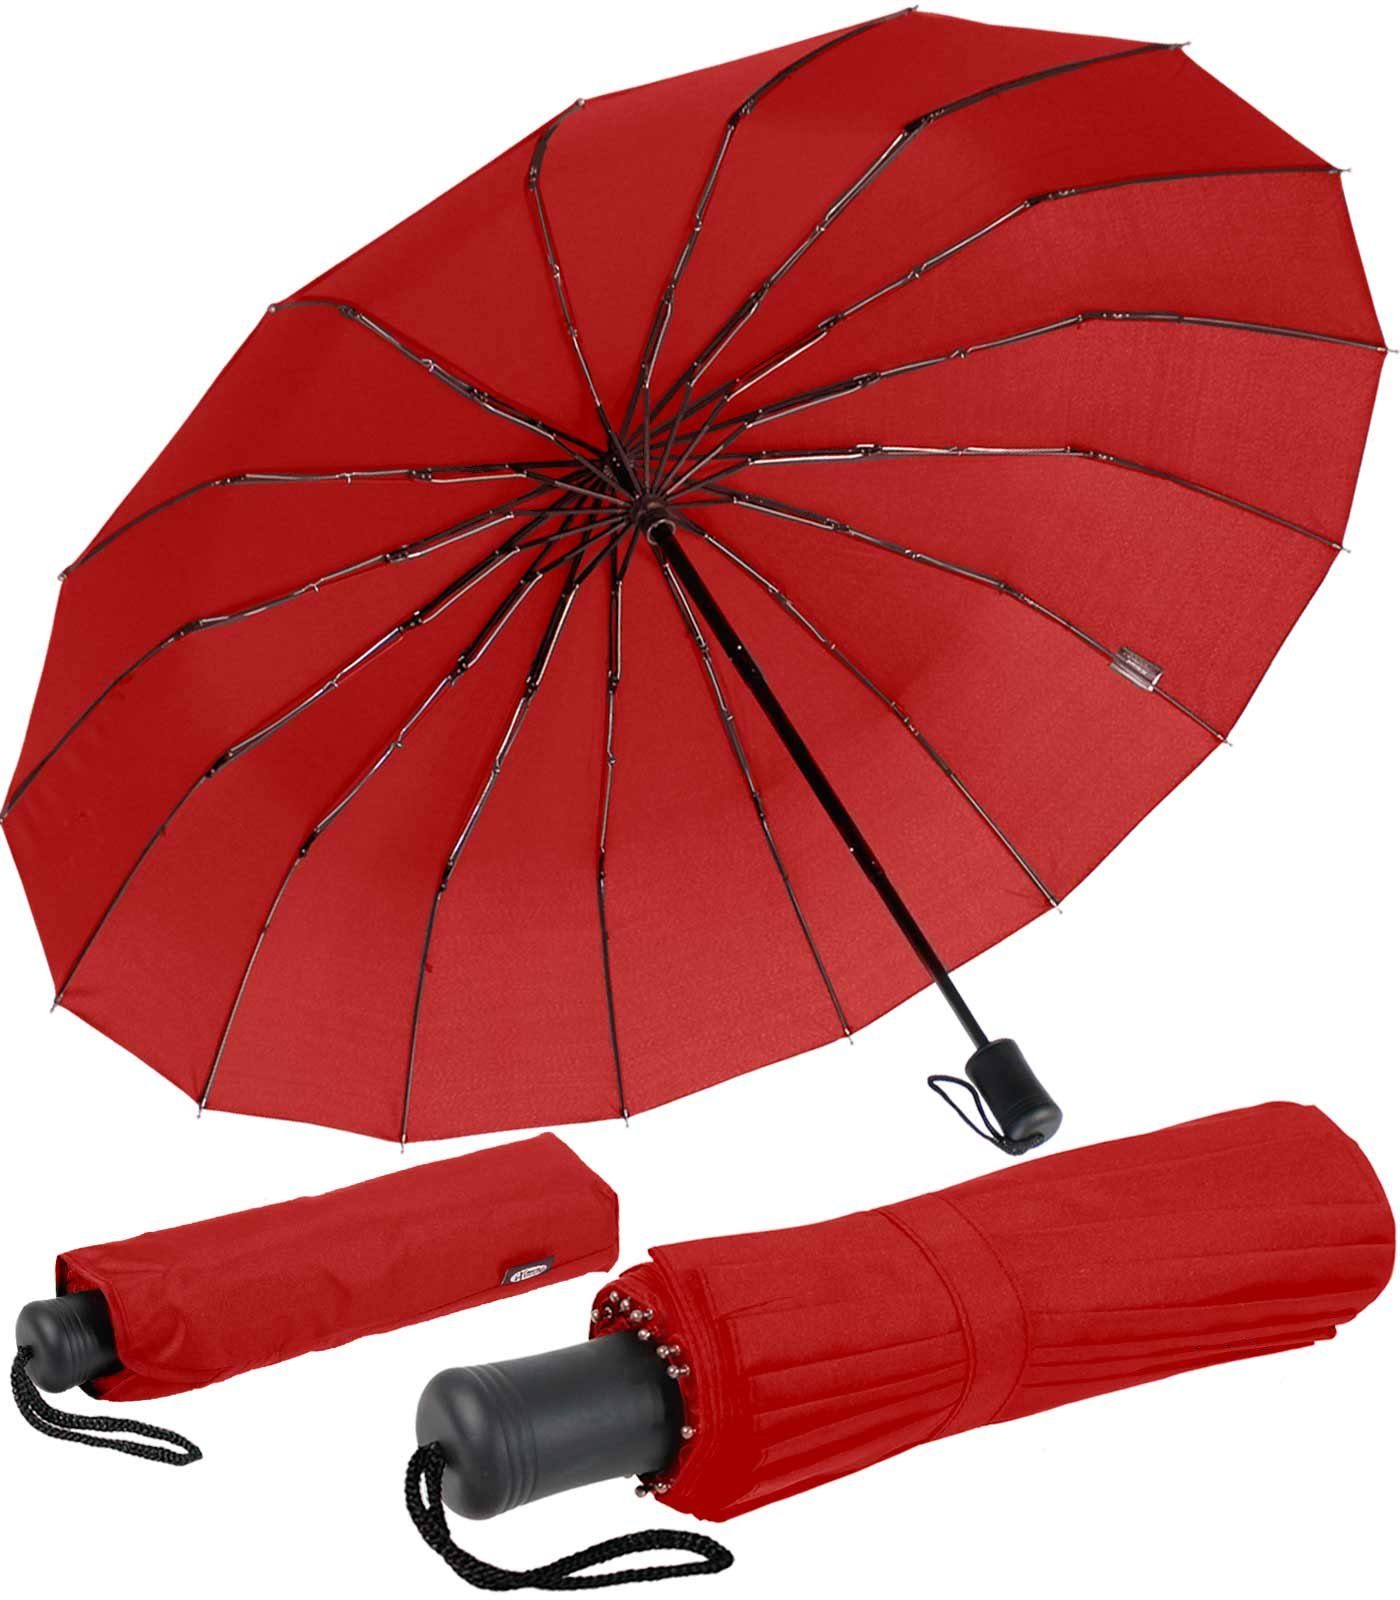 iX-brella Taschenregenschirm Mini mit 16 Streben extra stabil und farbenfroh, farbenfroh rot